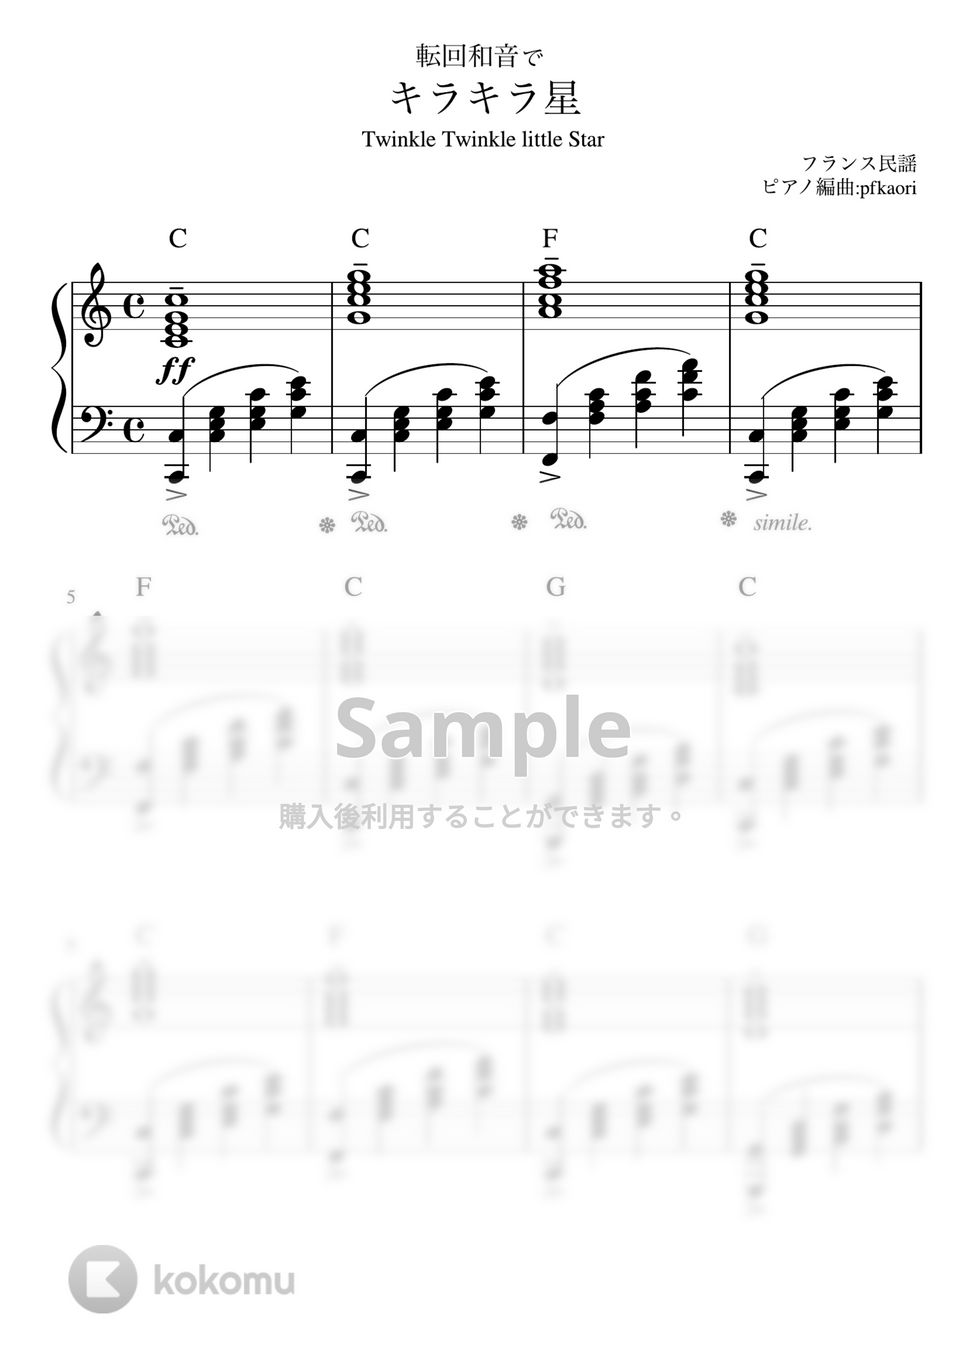 キラキラ星 (転回和音/ピアノソロ中級) by pfkaori